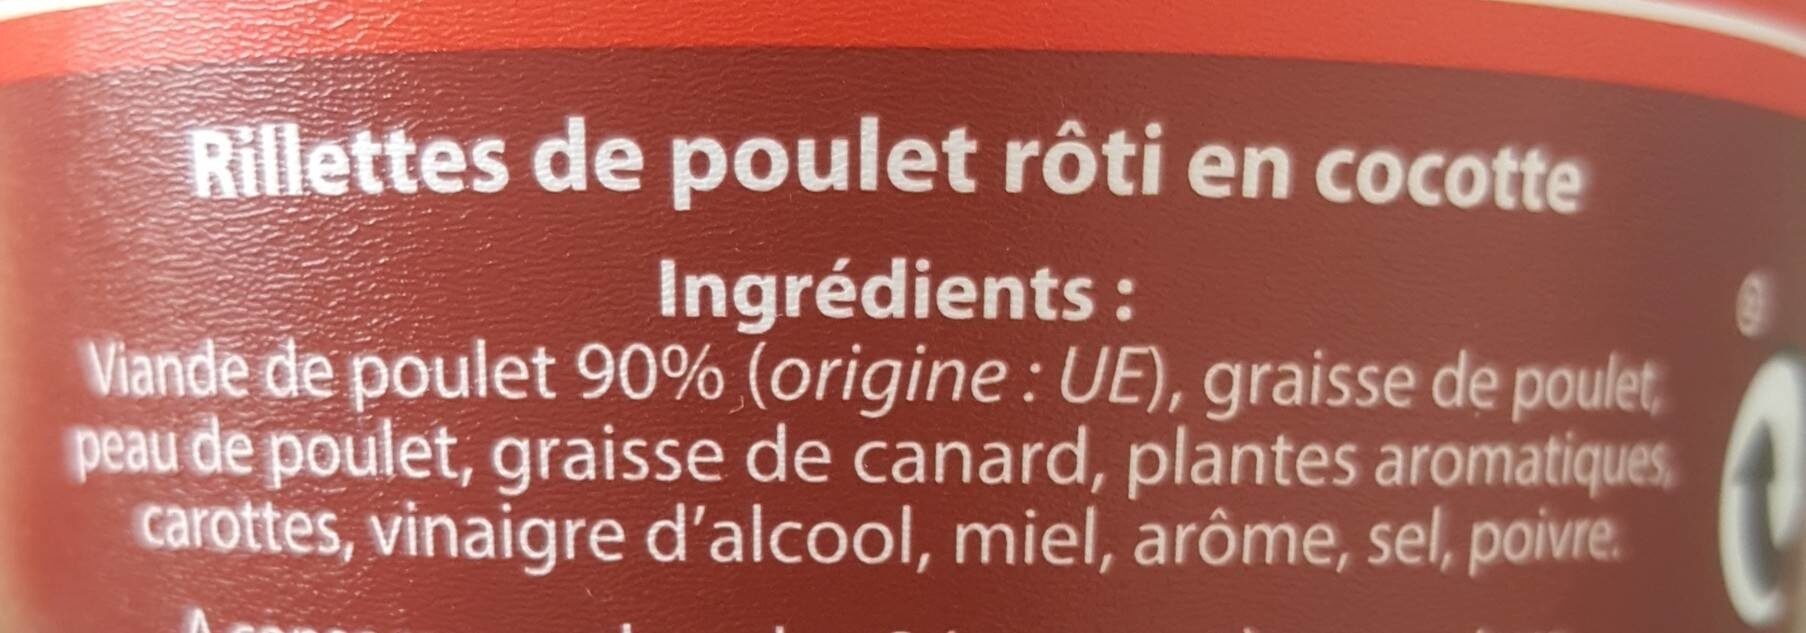 Rillettes de Poulet Rôti en cocotte - Ingrédients